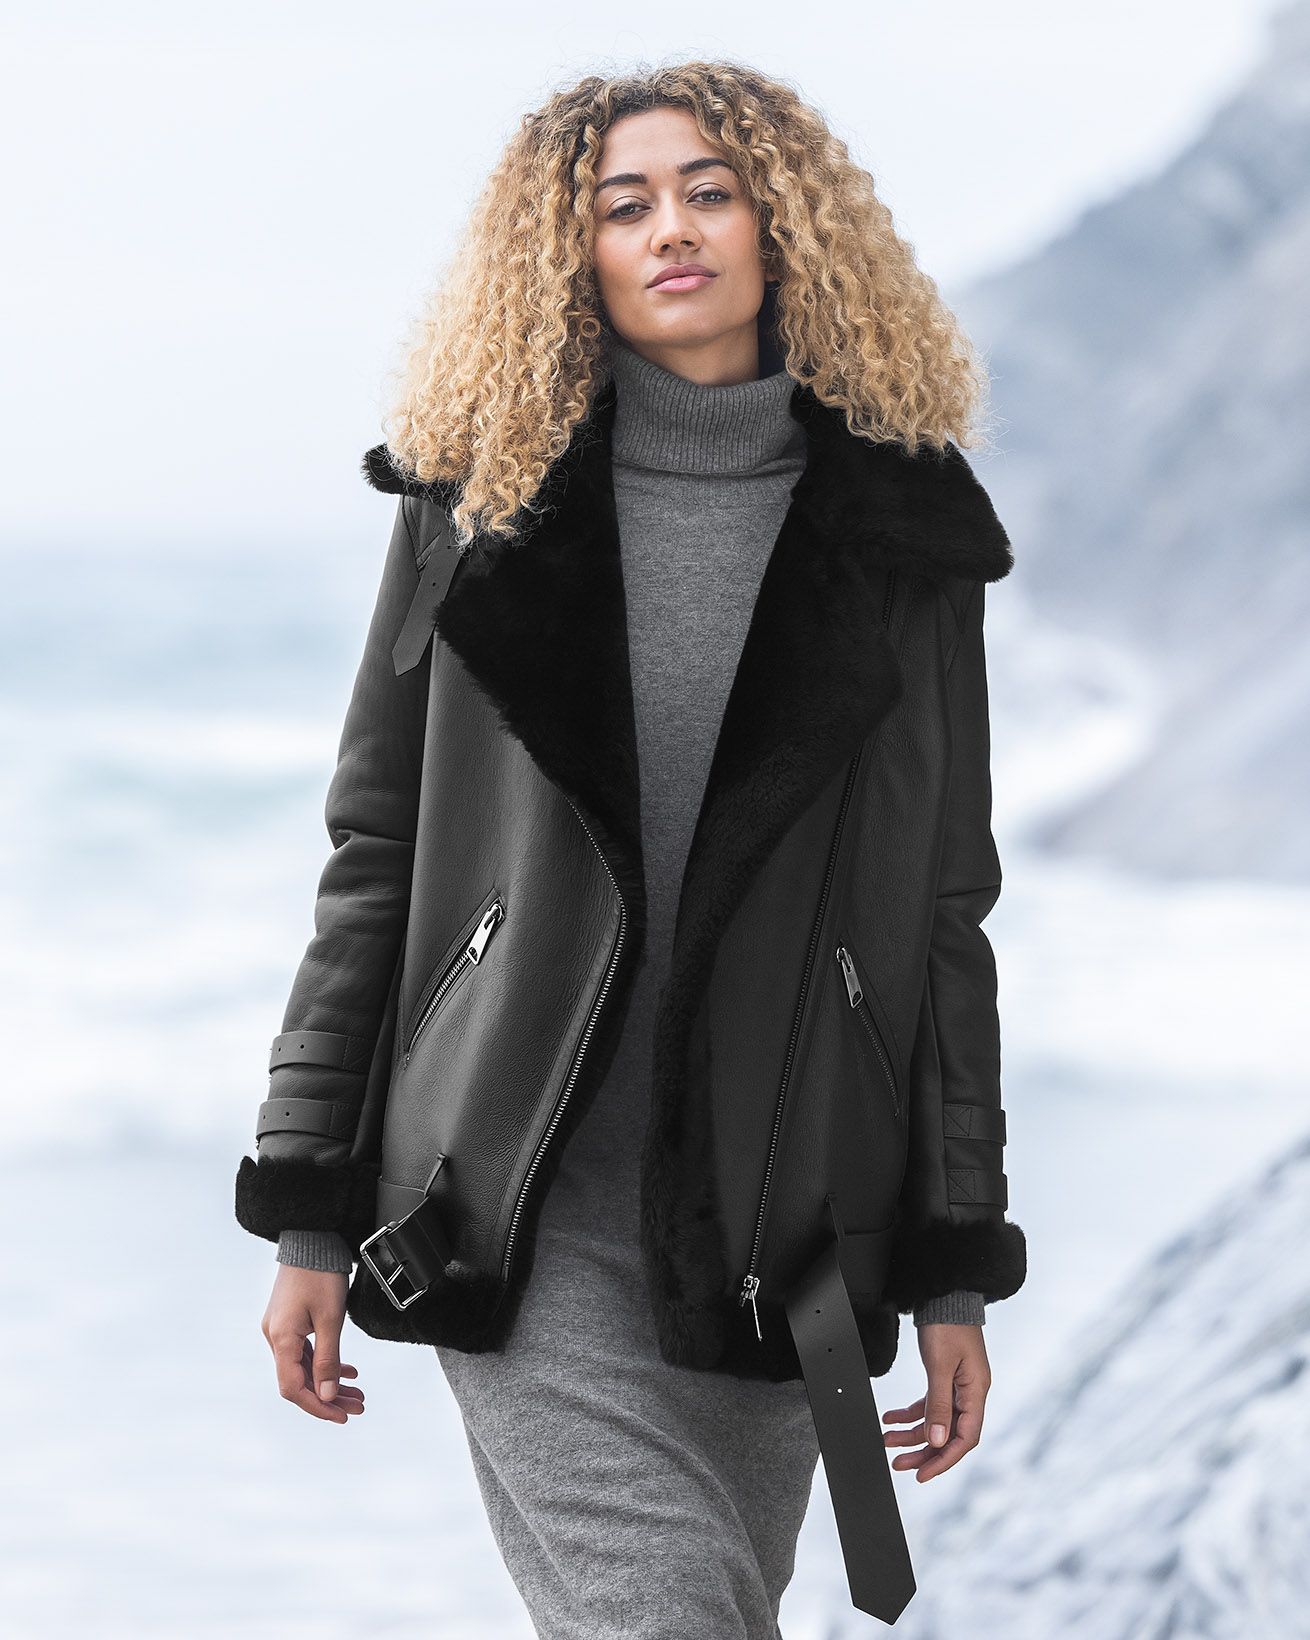 Women's Leather Jacket - Genuine Lambskin Coat | Reed Sports Wear Black / XX-Large